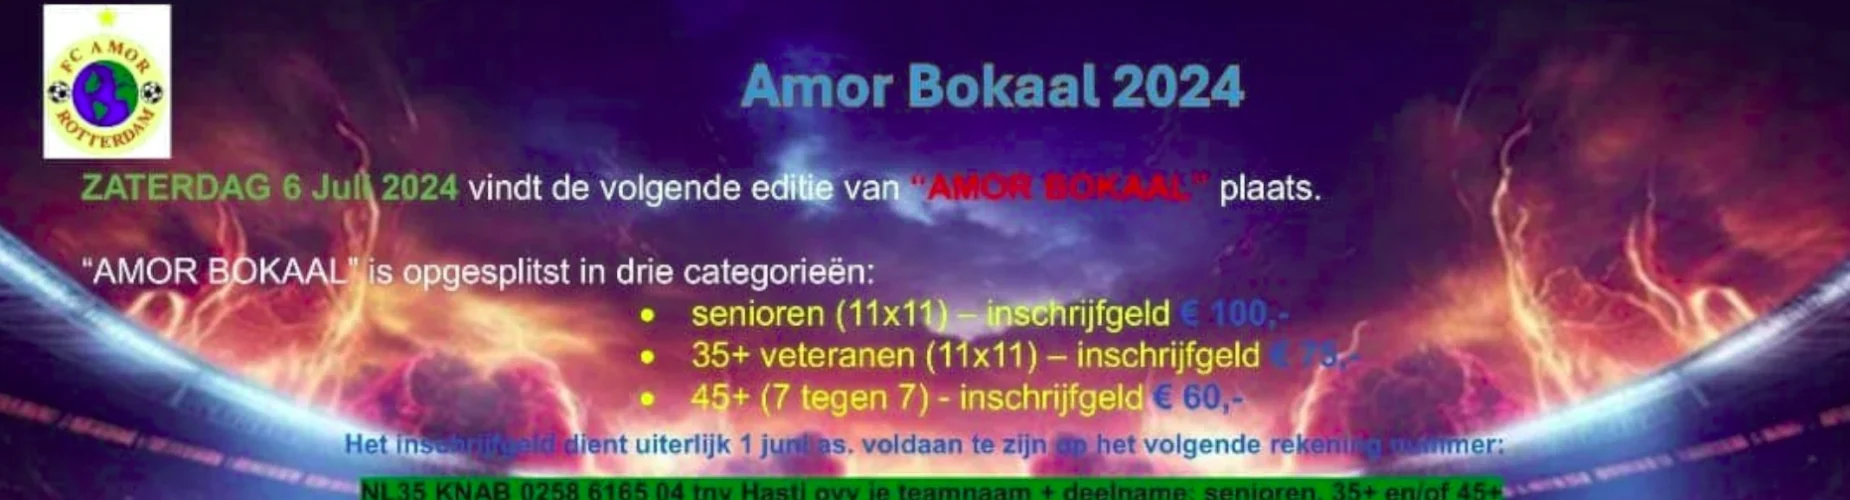 Banner - Amor Bokaal 2024 - RV & AV Overmaas - Rotterdam